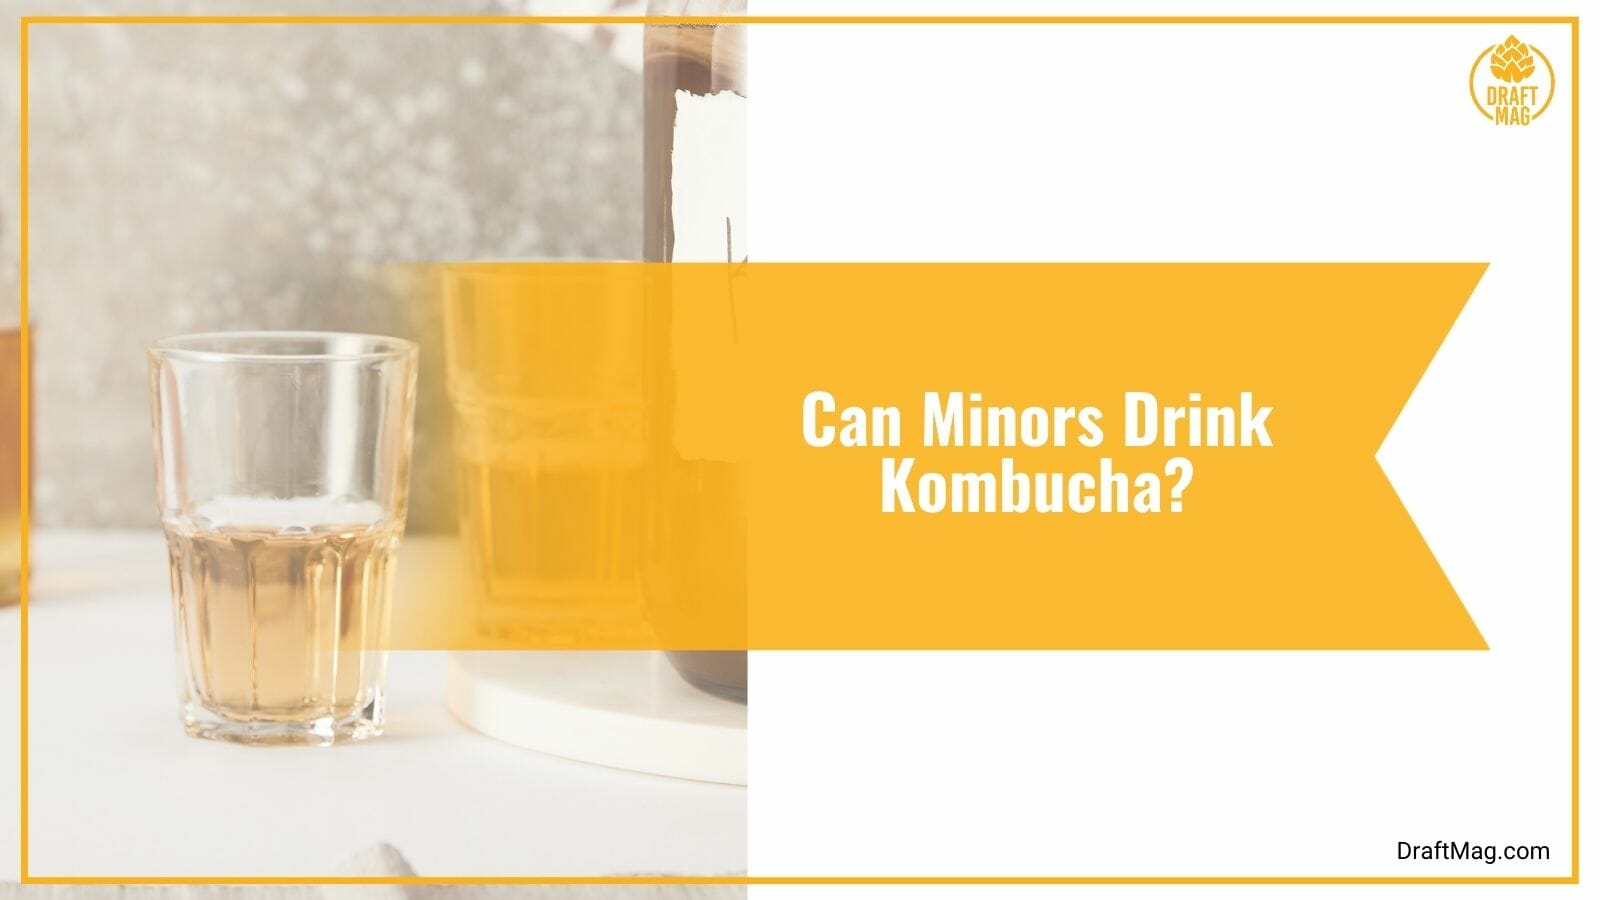 Can Minors Drink Kombucha